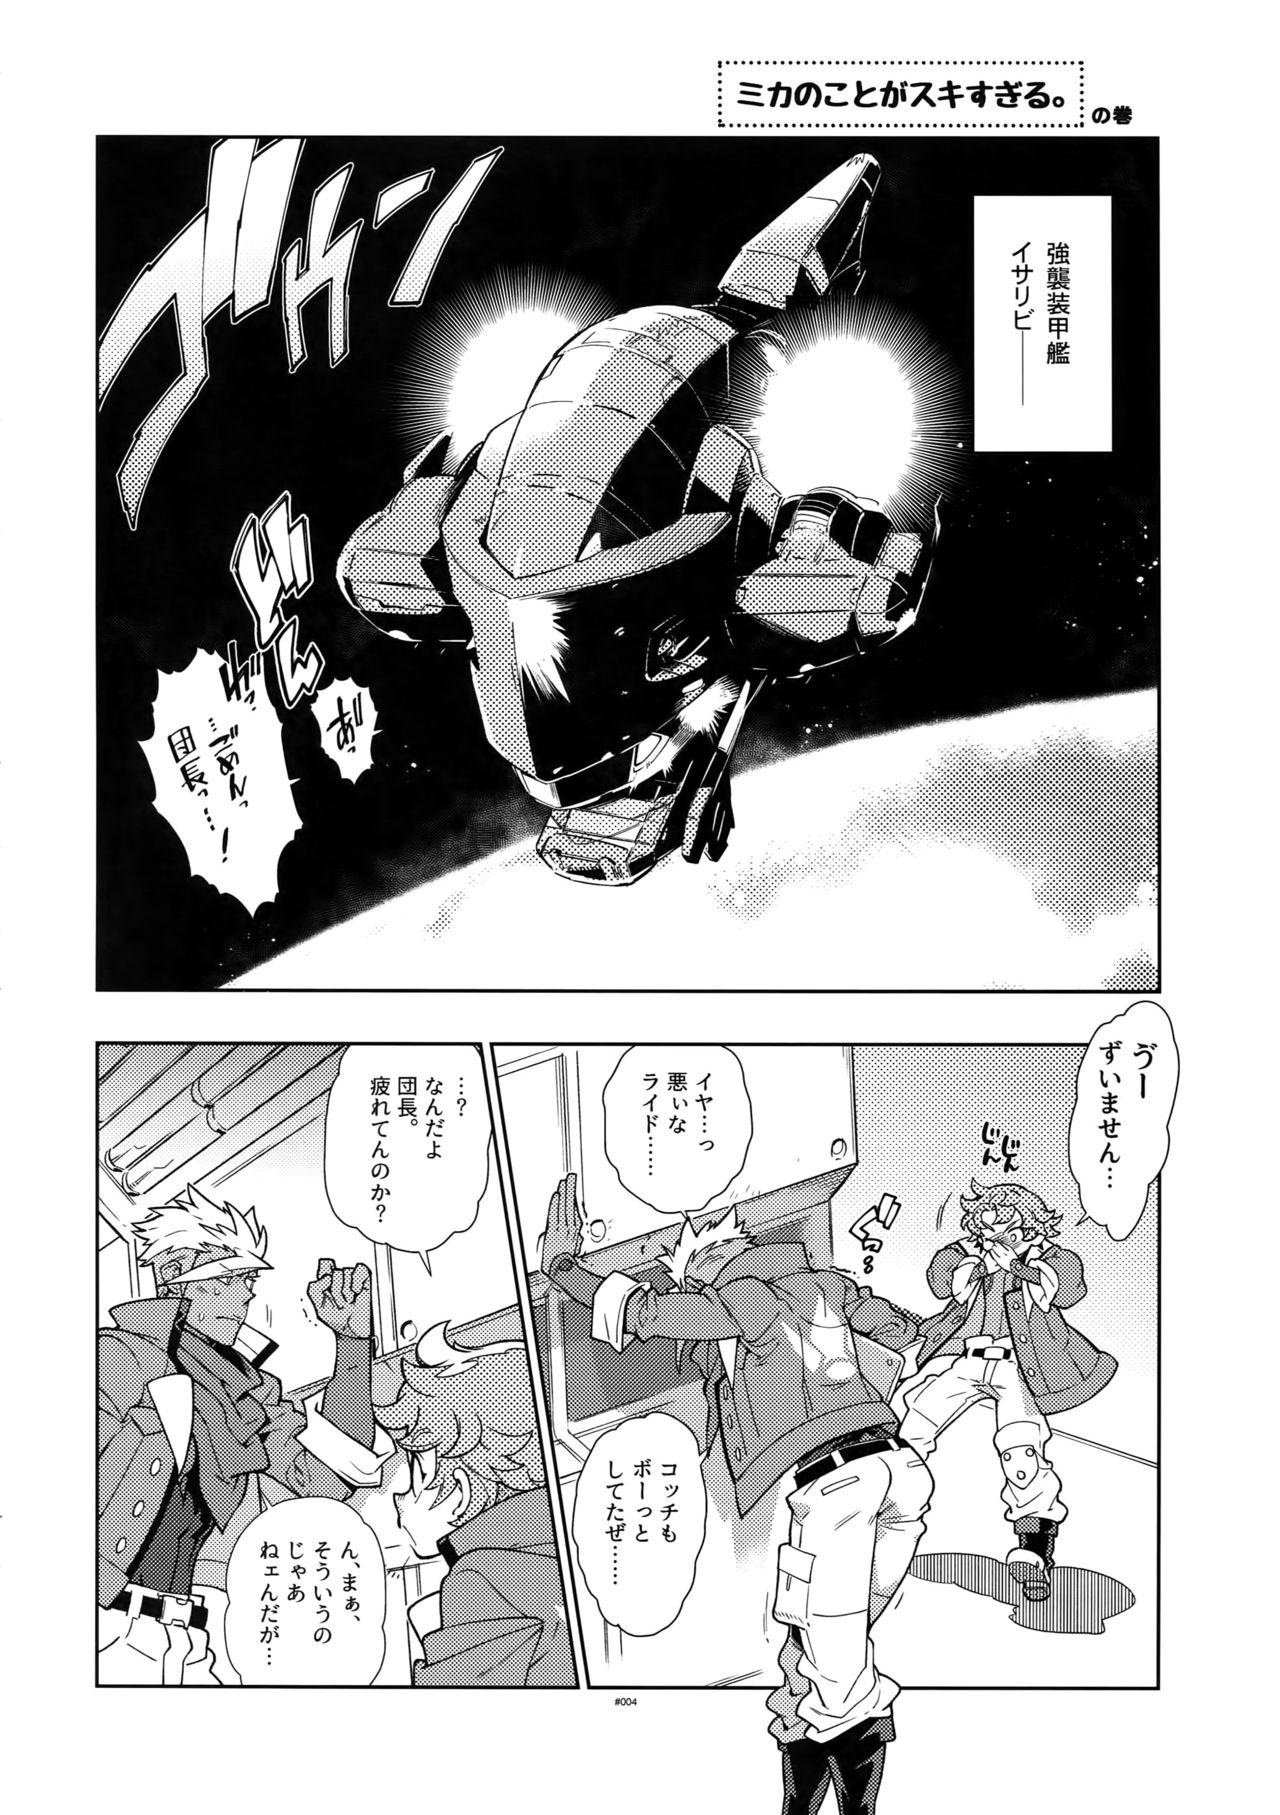 Blowjob Mika no Koto ga Suki Sugiru. - Mobile suit gundam tekketsu no orphans Stunning - Page 3